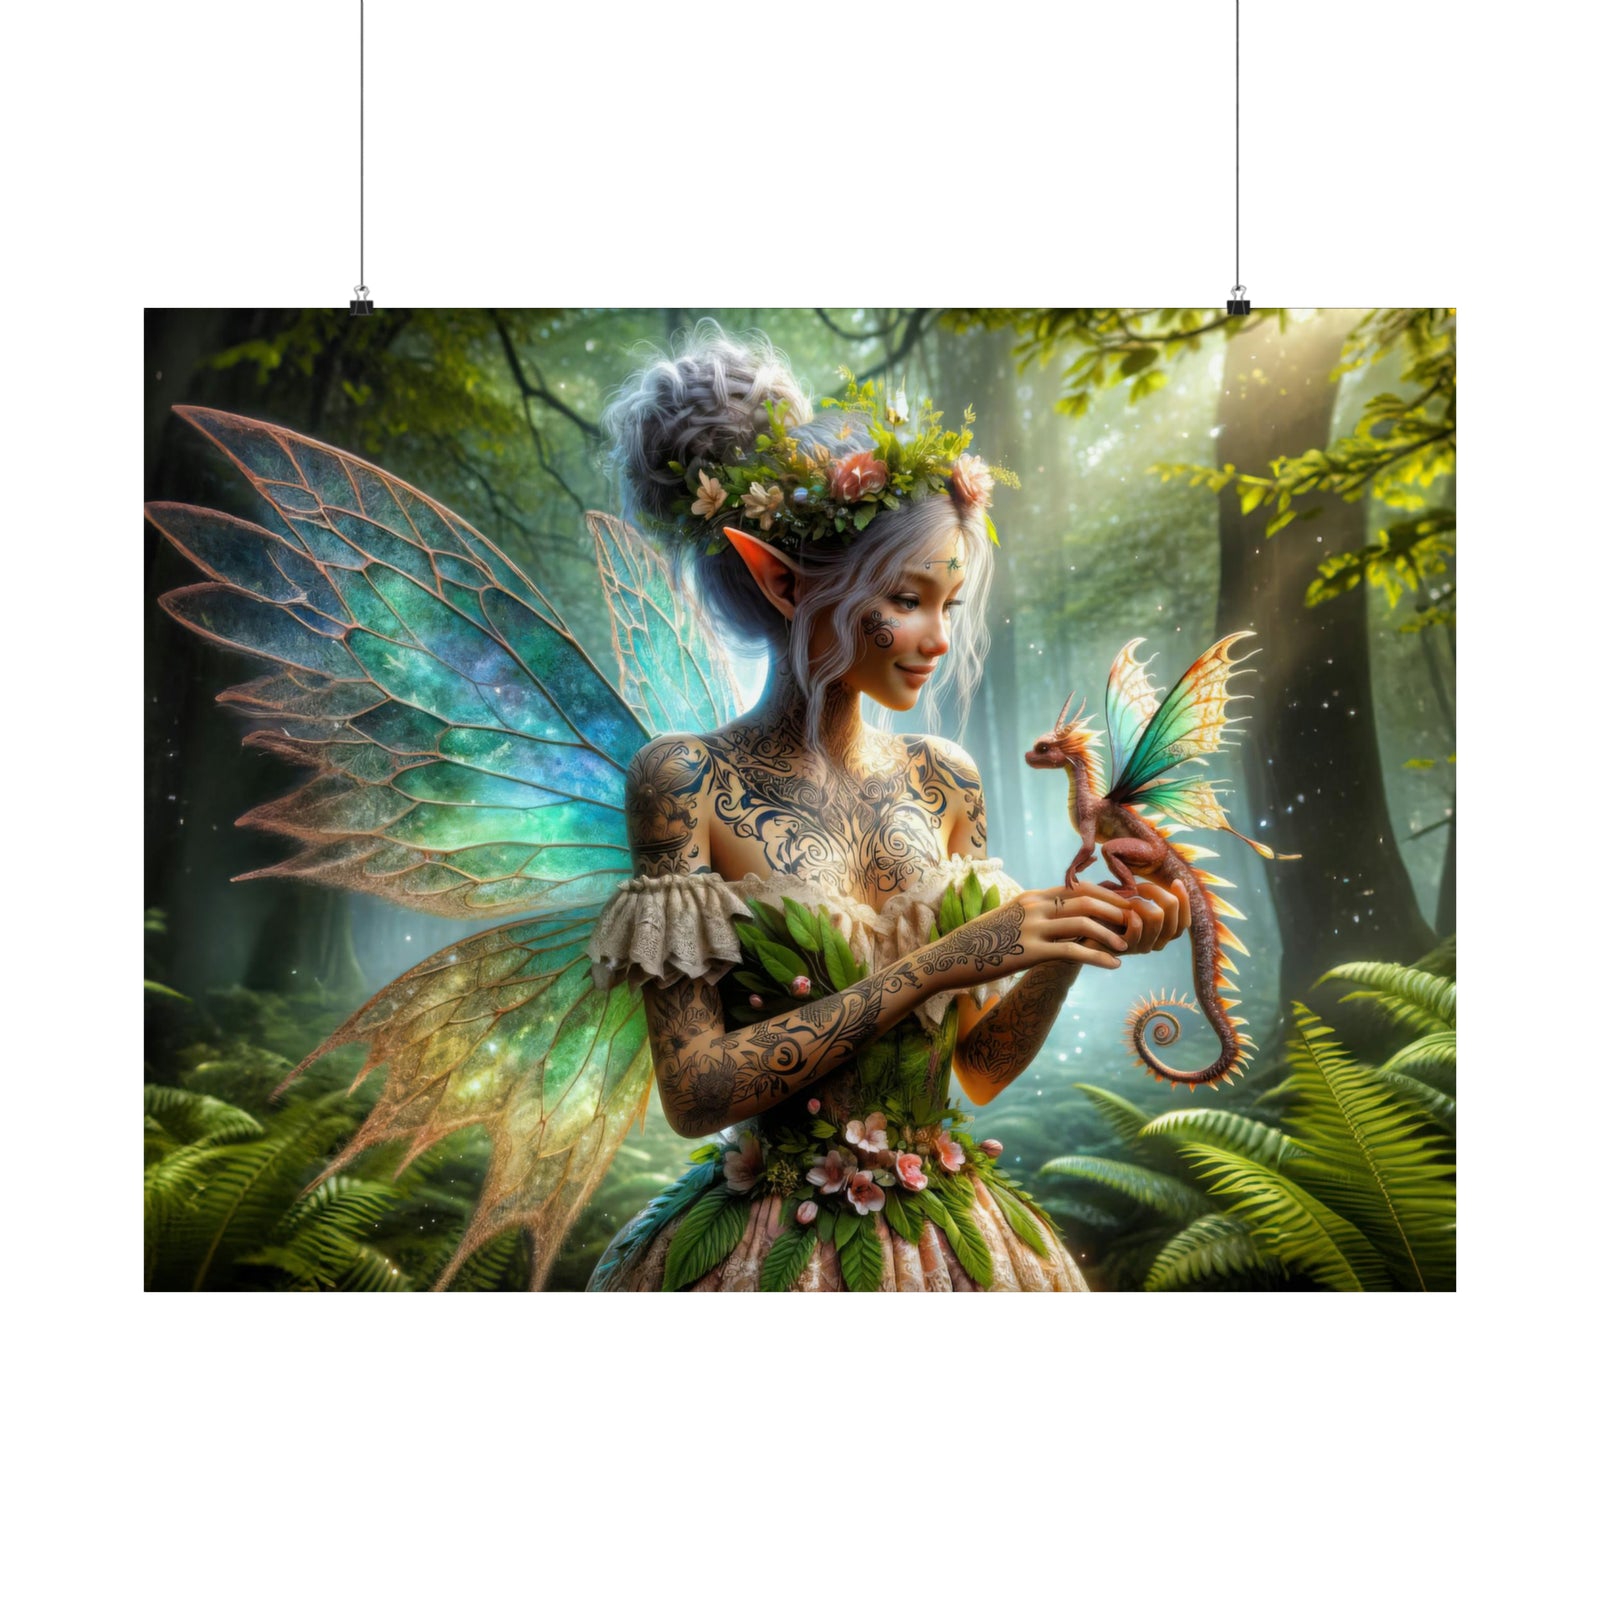 La fée et sa dragonette Poster